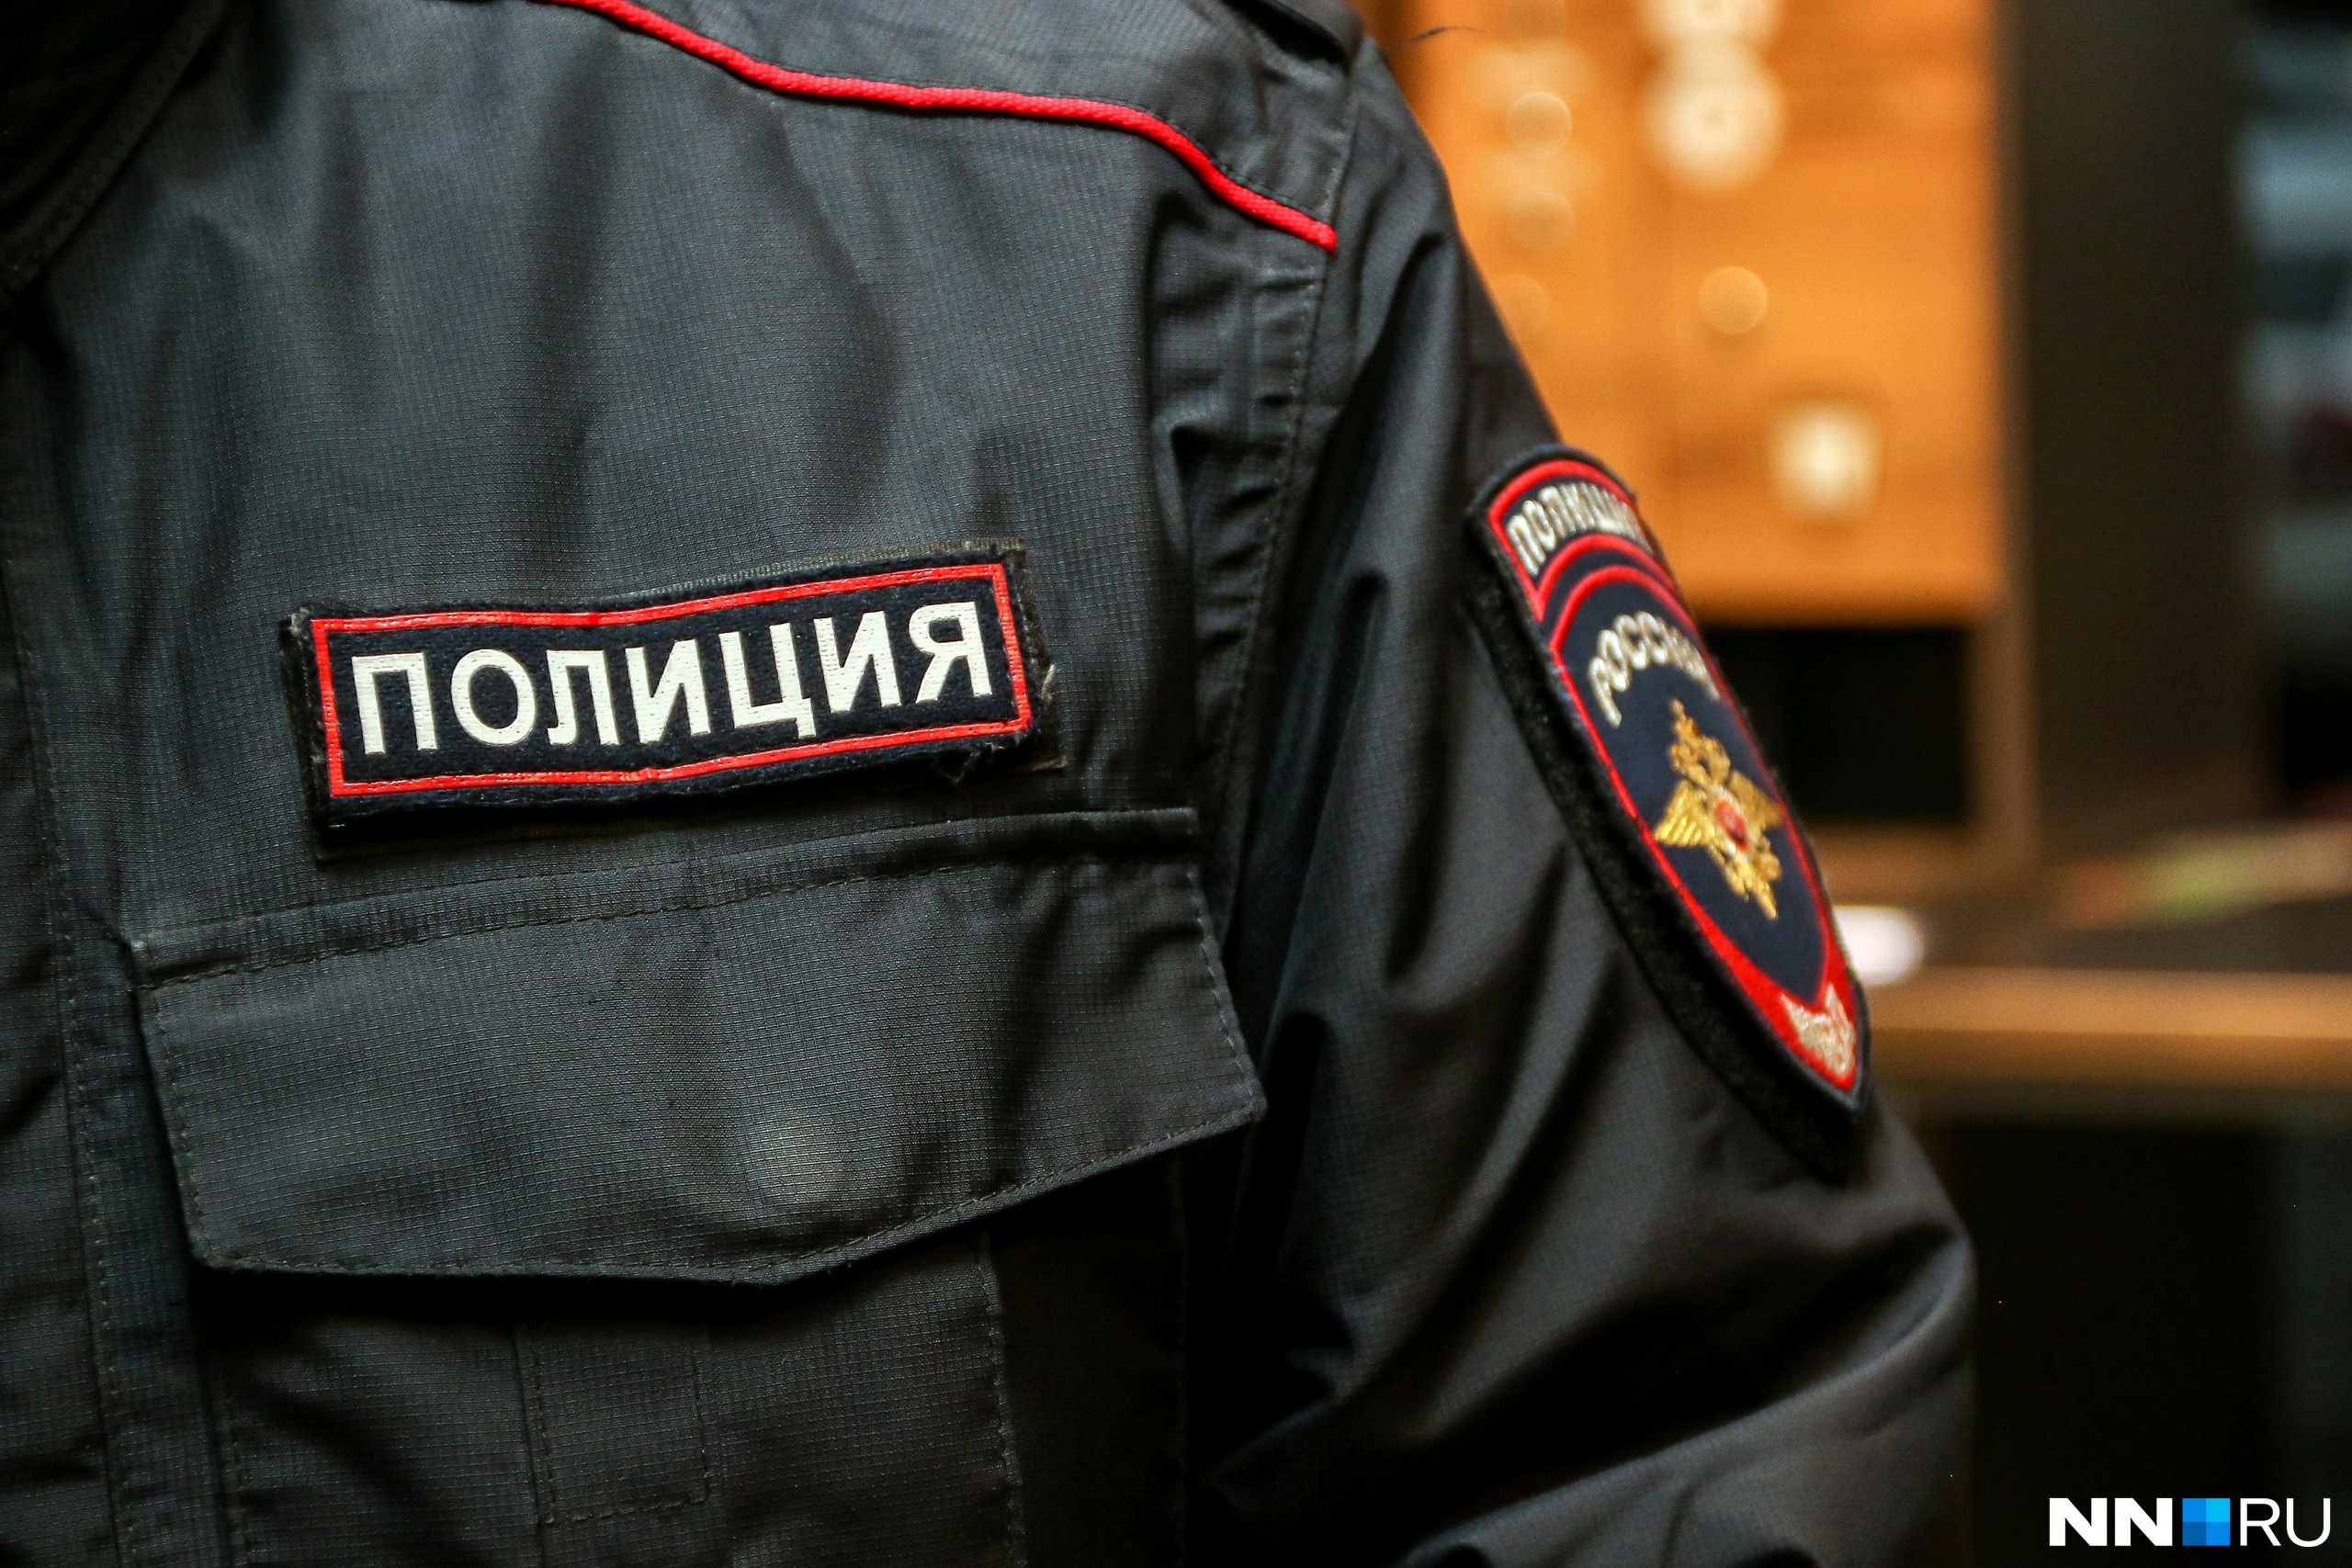 Подрядчика подозревают в хищении 11 млн рублей при ремонте детского центра в Дзержинске